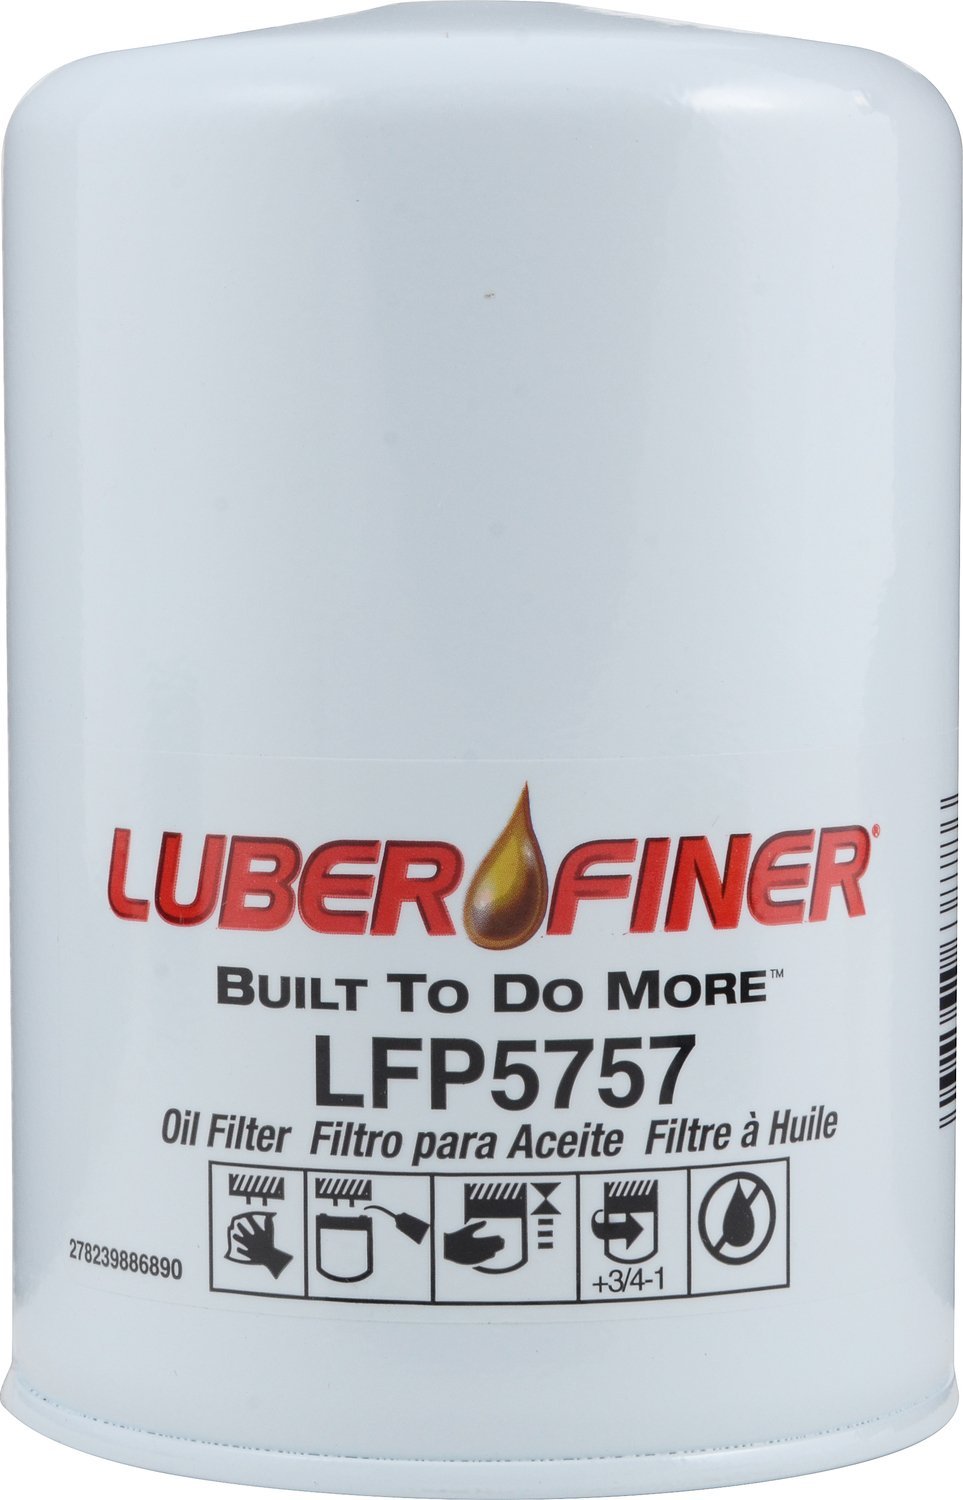  [AUSTRALIA] - Luber-finer LFP5757 Heavy Duty Oil Filter 1 Pack